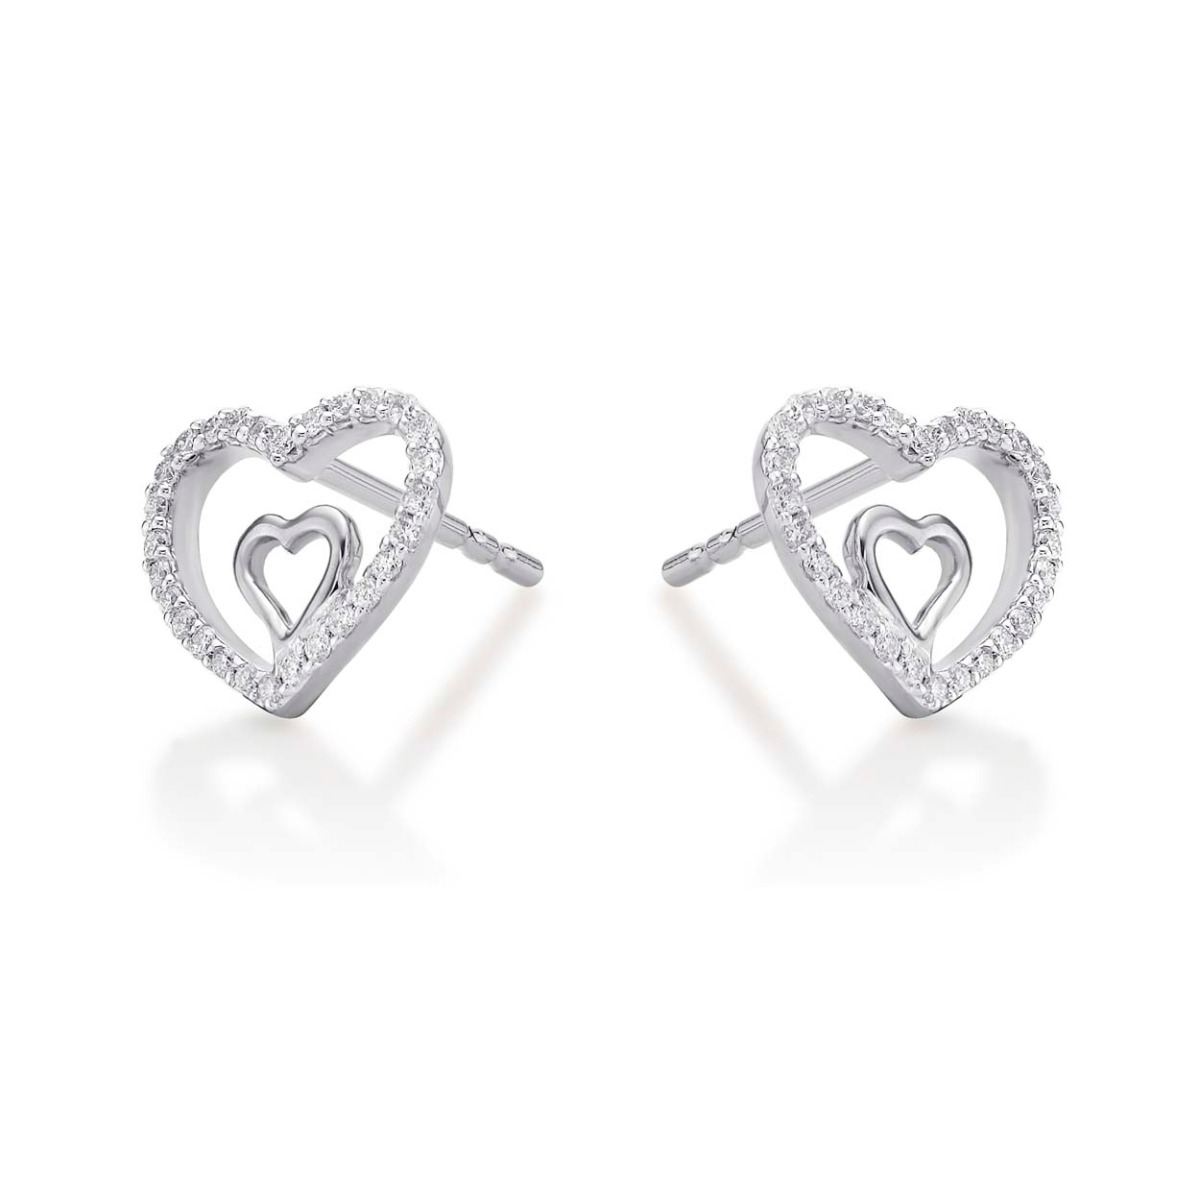 Diamond Heart Earrings | Classic and Interlocking Heart Earrings